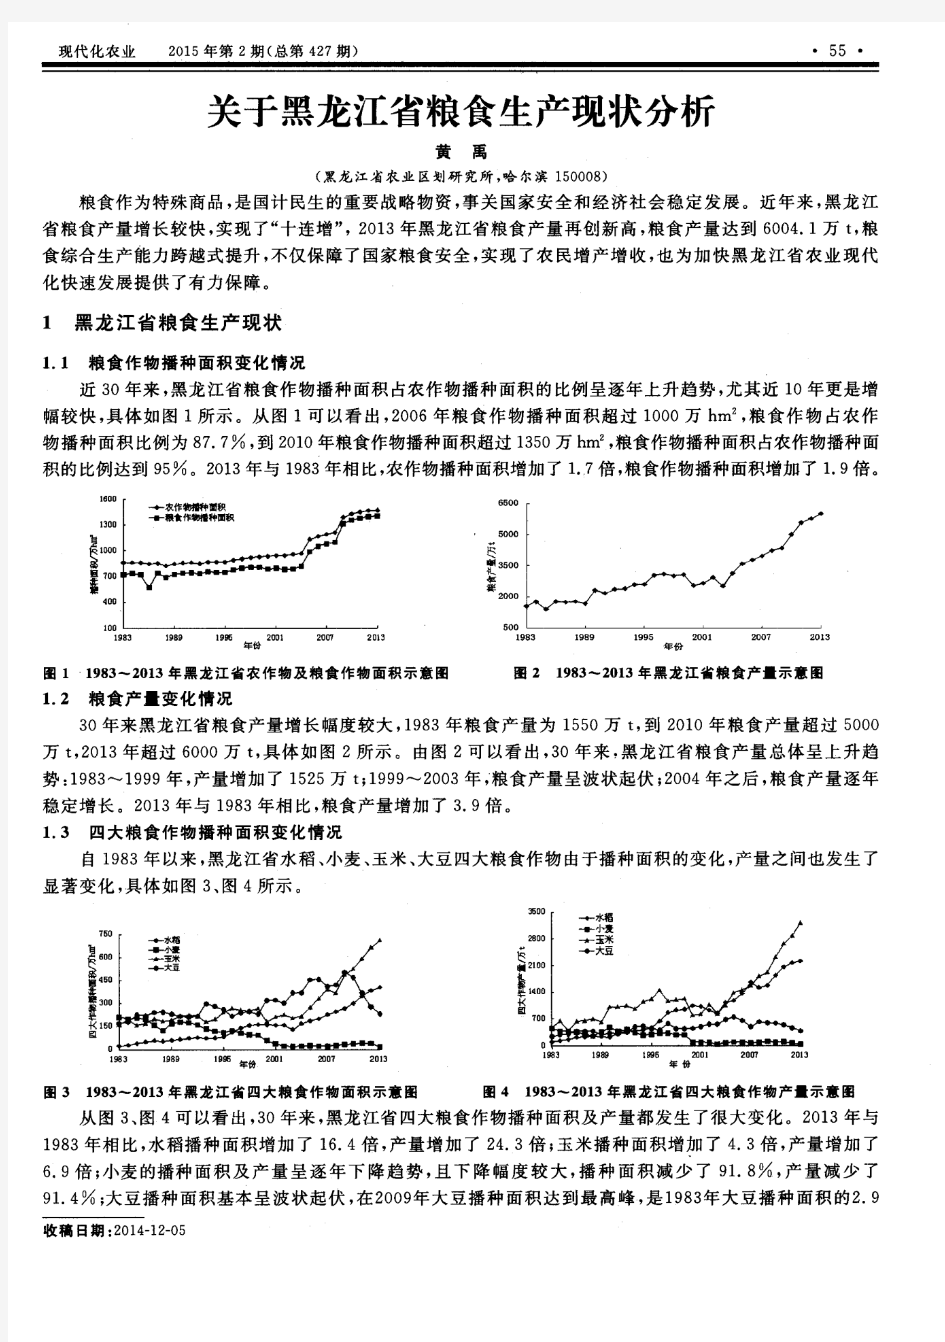 关于黑龙江省粮食生产现状分析